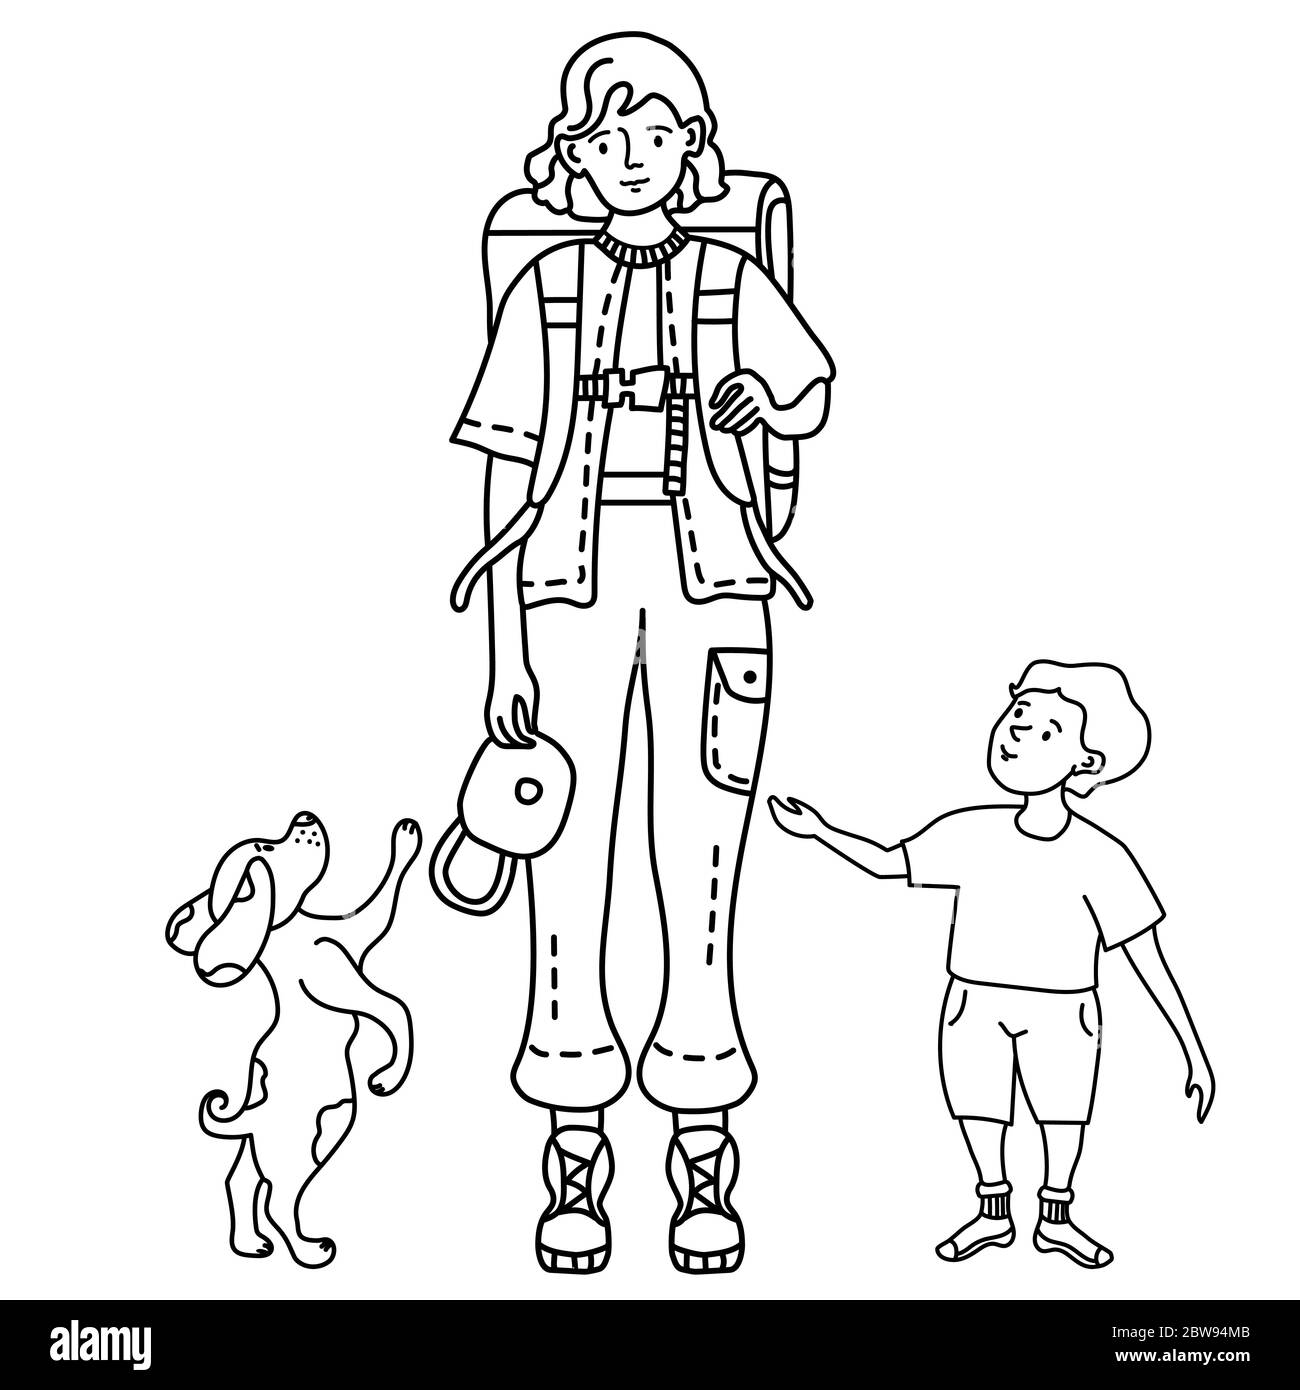 Lineare Umrisszeichnung Doodles Familie. Mädchen in Hosen mit Taschen und mit einem Rucksack hinter dem Rücken in einer Mütze zu reisen. Neben einem Kind stehen Stock Vektor